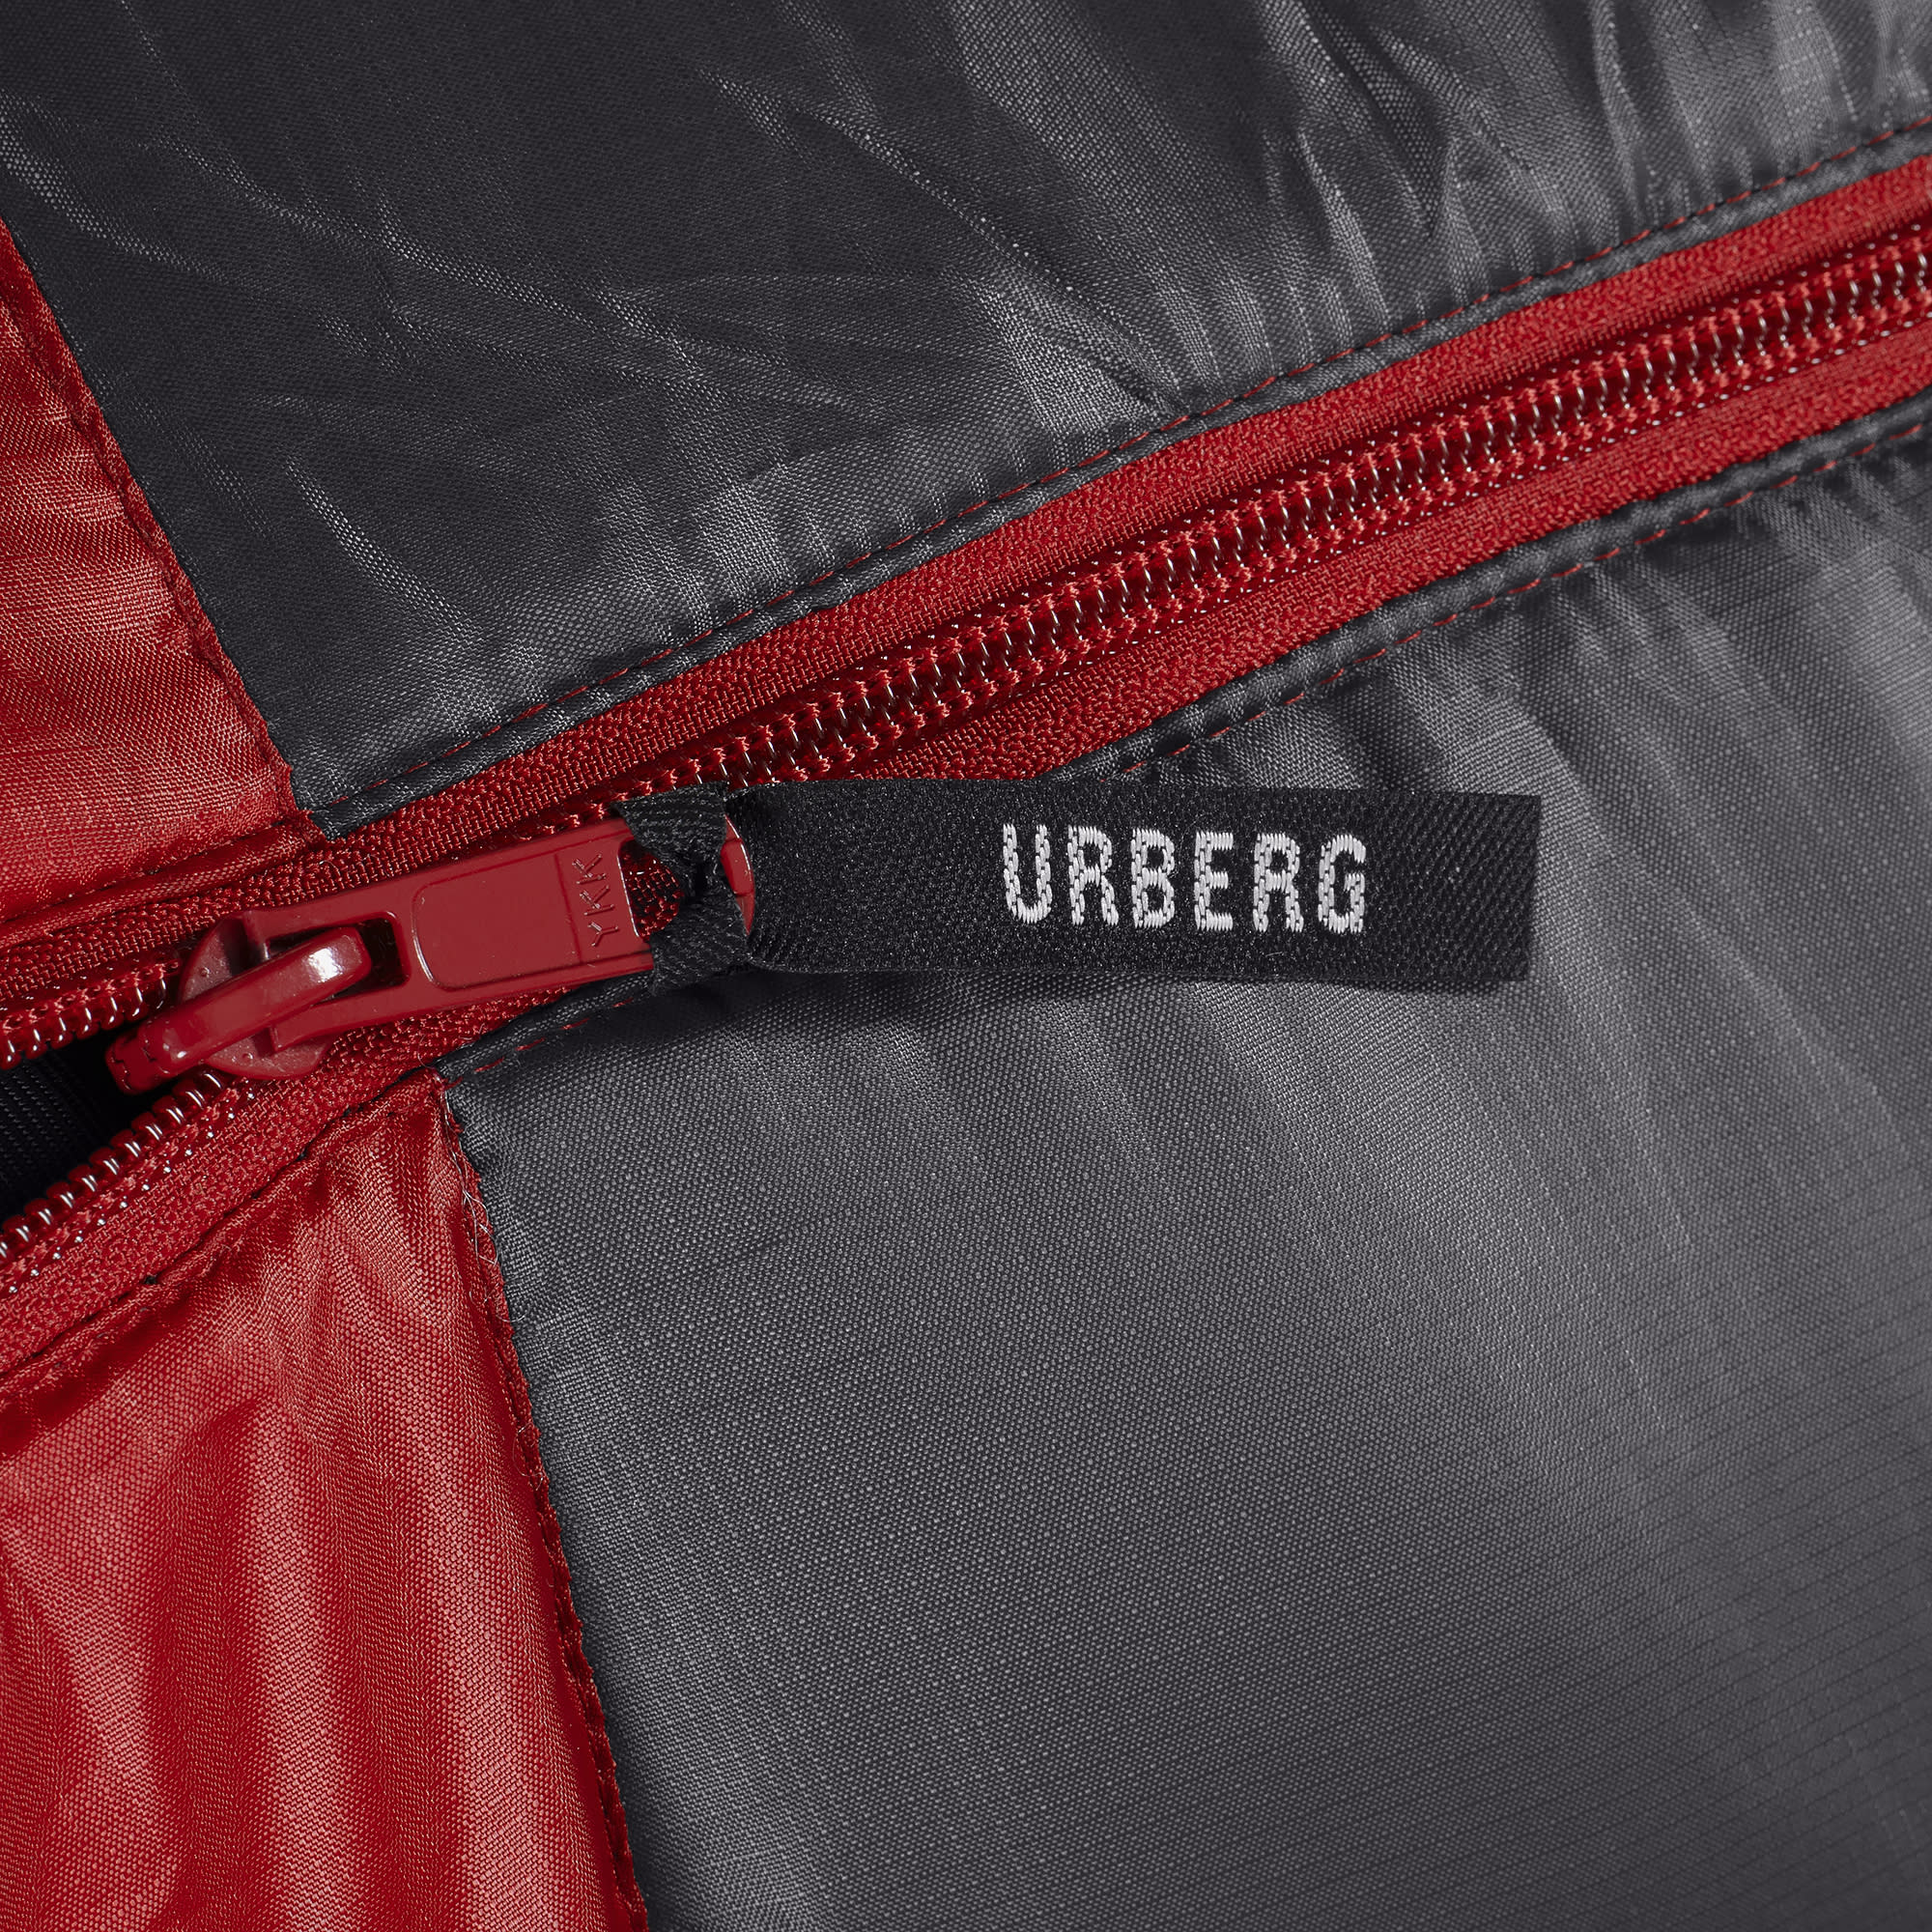 Urberg Extra Wide Sleeping Bag Black Beauty/Asphalt | Buy Urberg